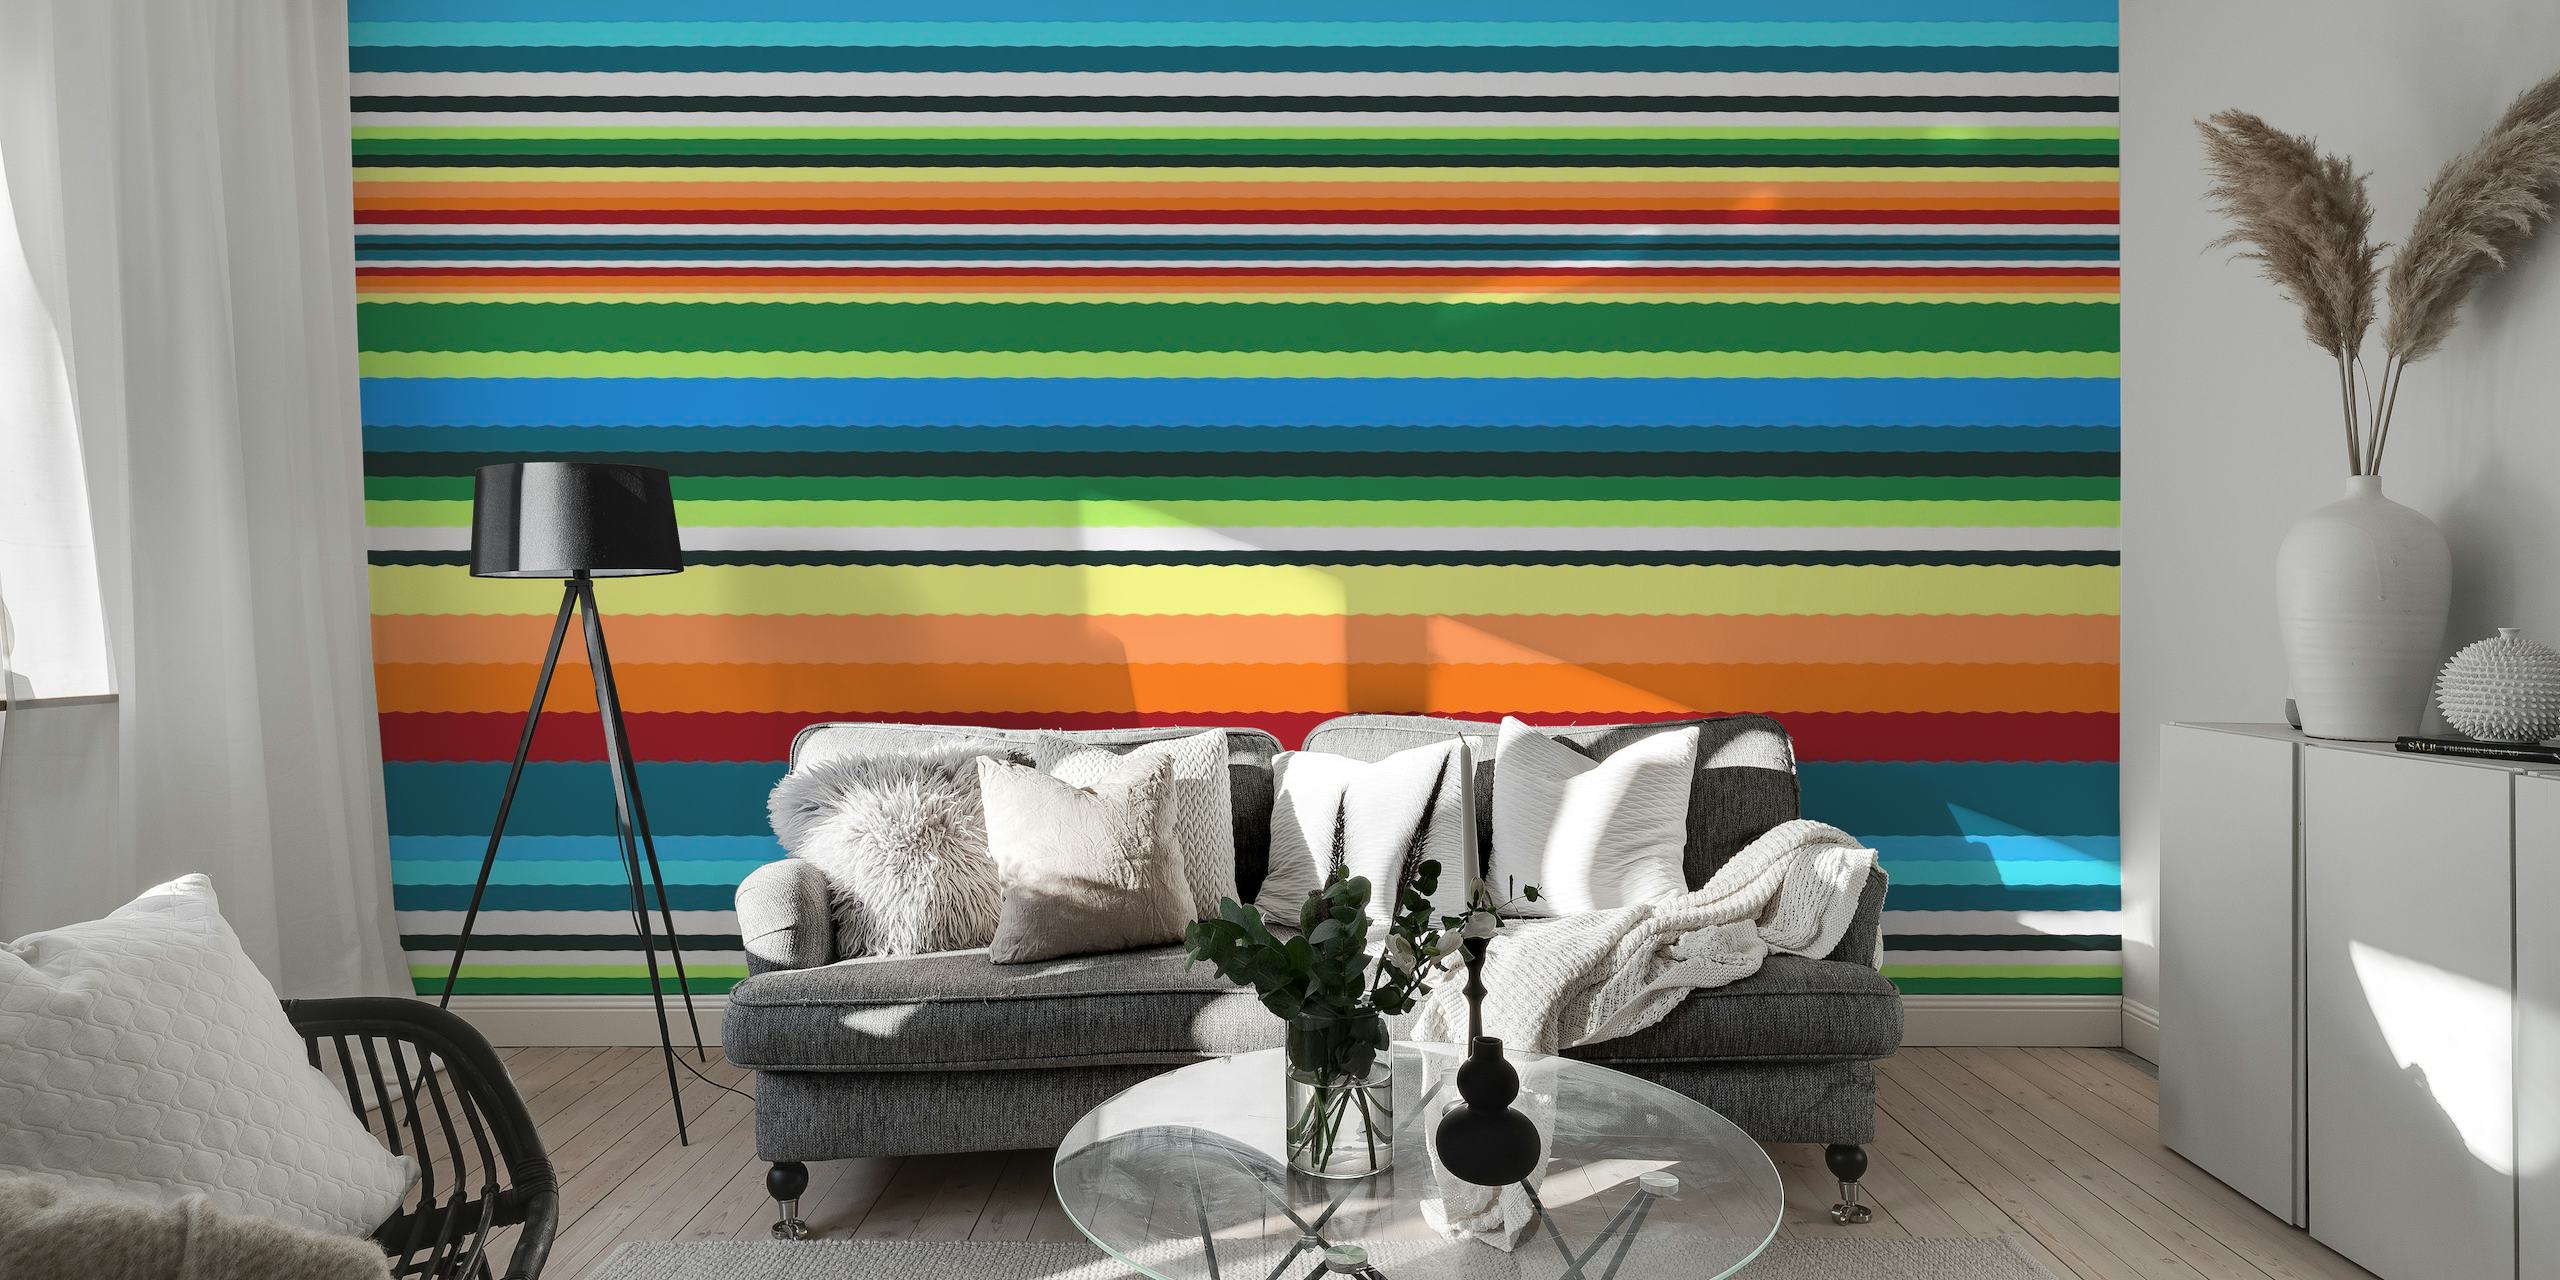 Kleurrijk gestreept fotobehang getiteld 'Bohemian Bright' met levendige lijnen in verschillende kleuren.